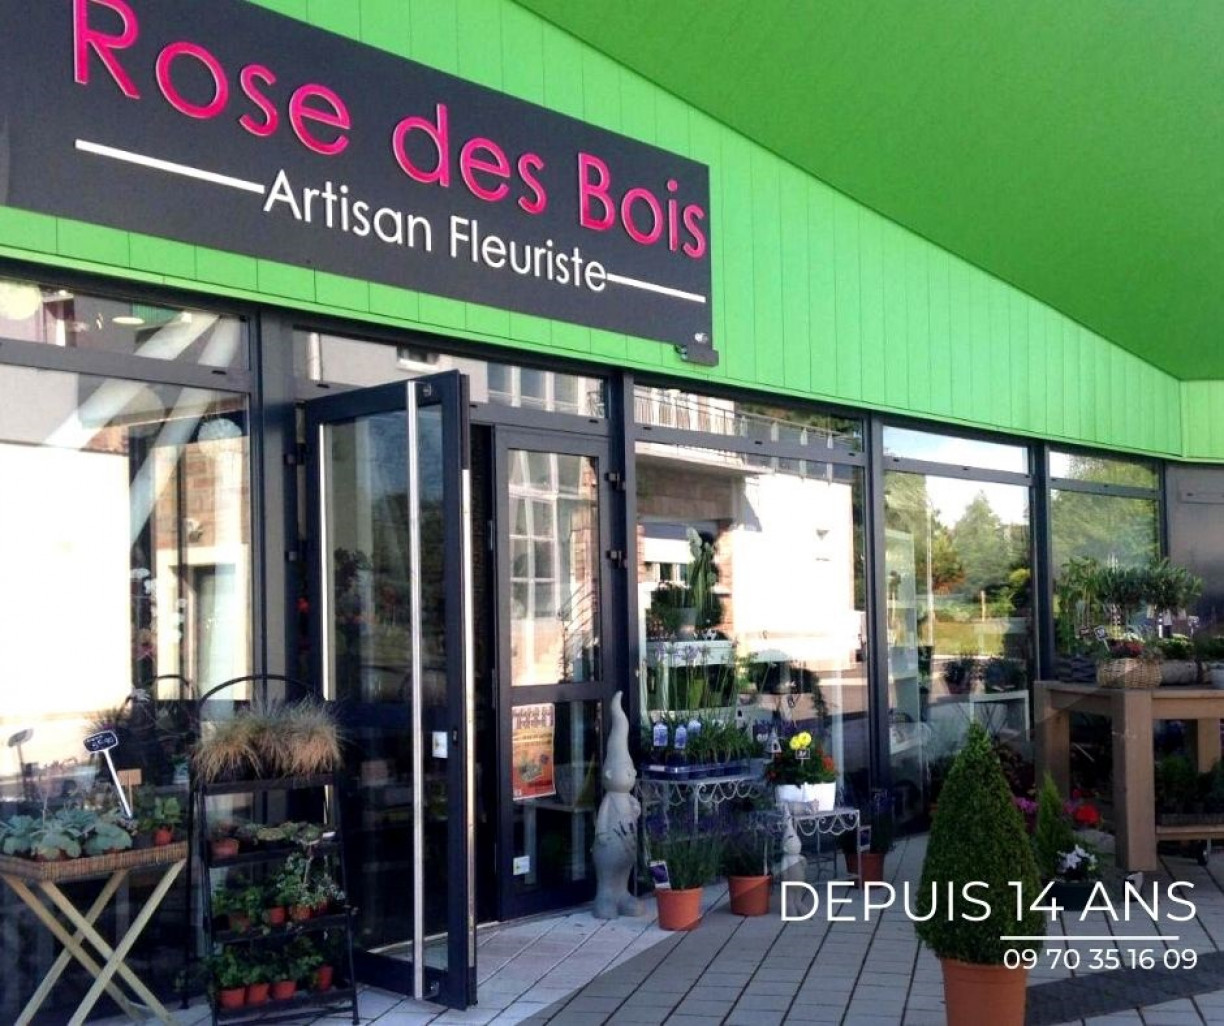 Rose Des Bois intervient dans les environs de Rambervillers, Gérardmer, Anould et Cheniménil.